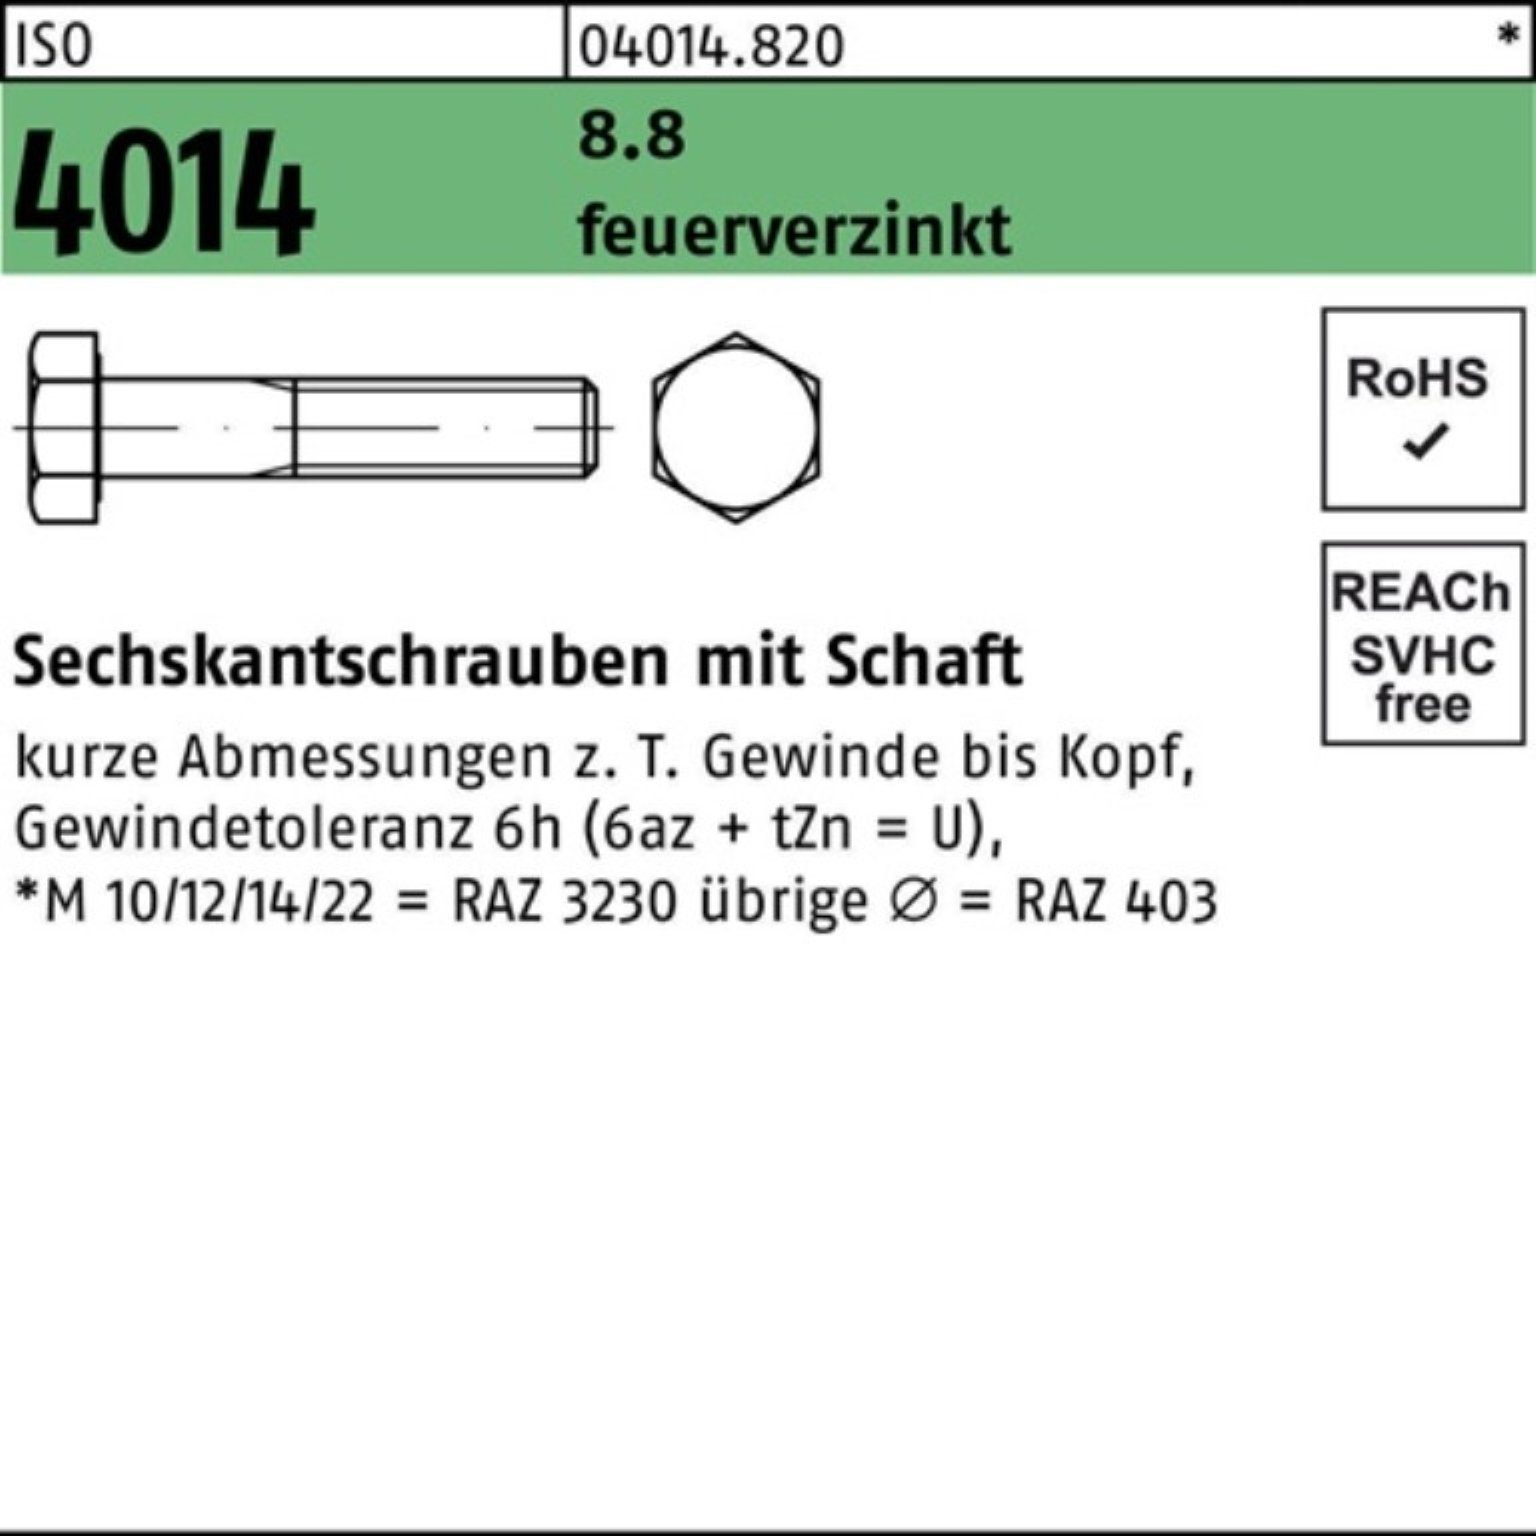 Bufab Sechskantschraube 100er Pack Sechskantschraube ISO 4014 Schaft M12x 75 8.8 feuerverz. 50